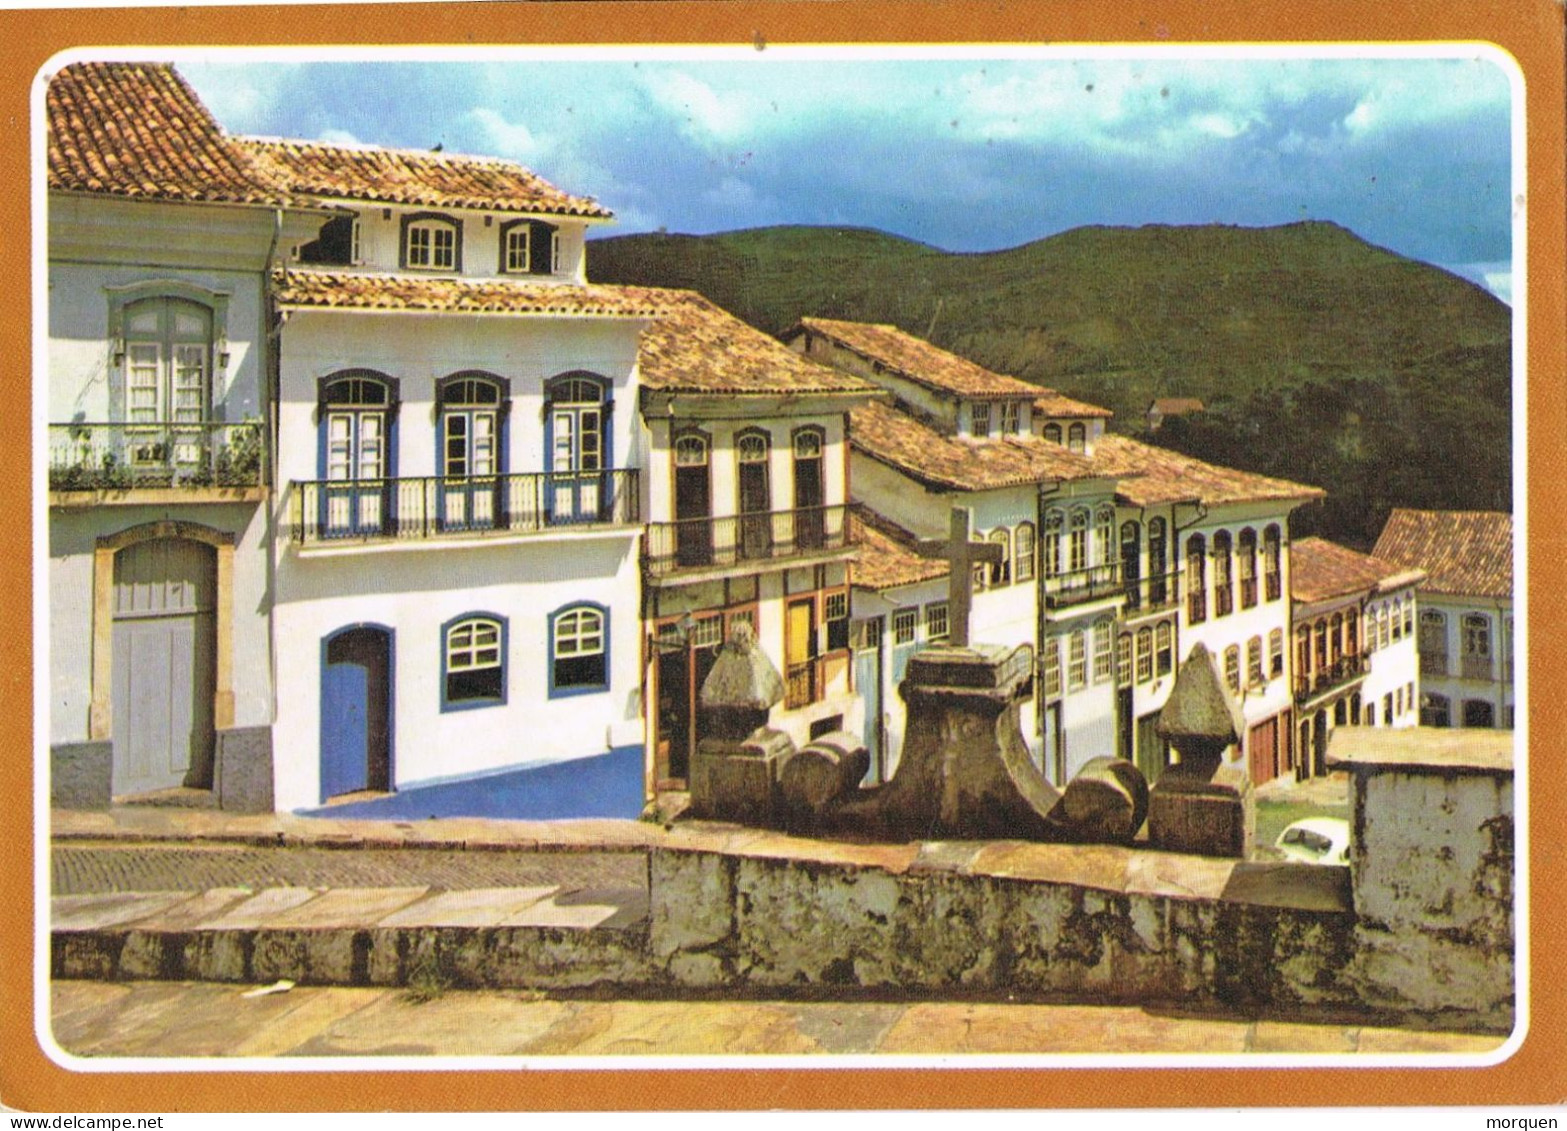 54351. Carta Aerea SALVADOR BAHIA (Brasil) 1990- Vista Ouro Preto, Largo Do Rosario - Briefe U. Dokumente